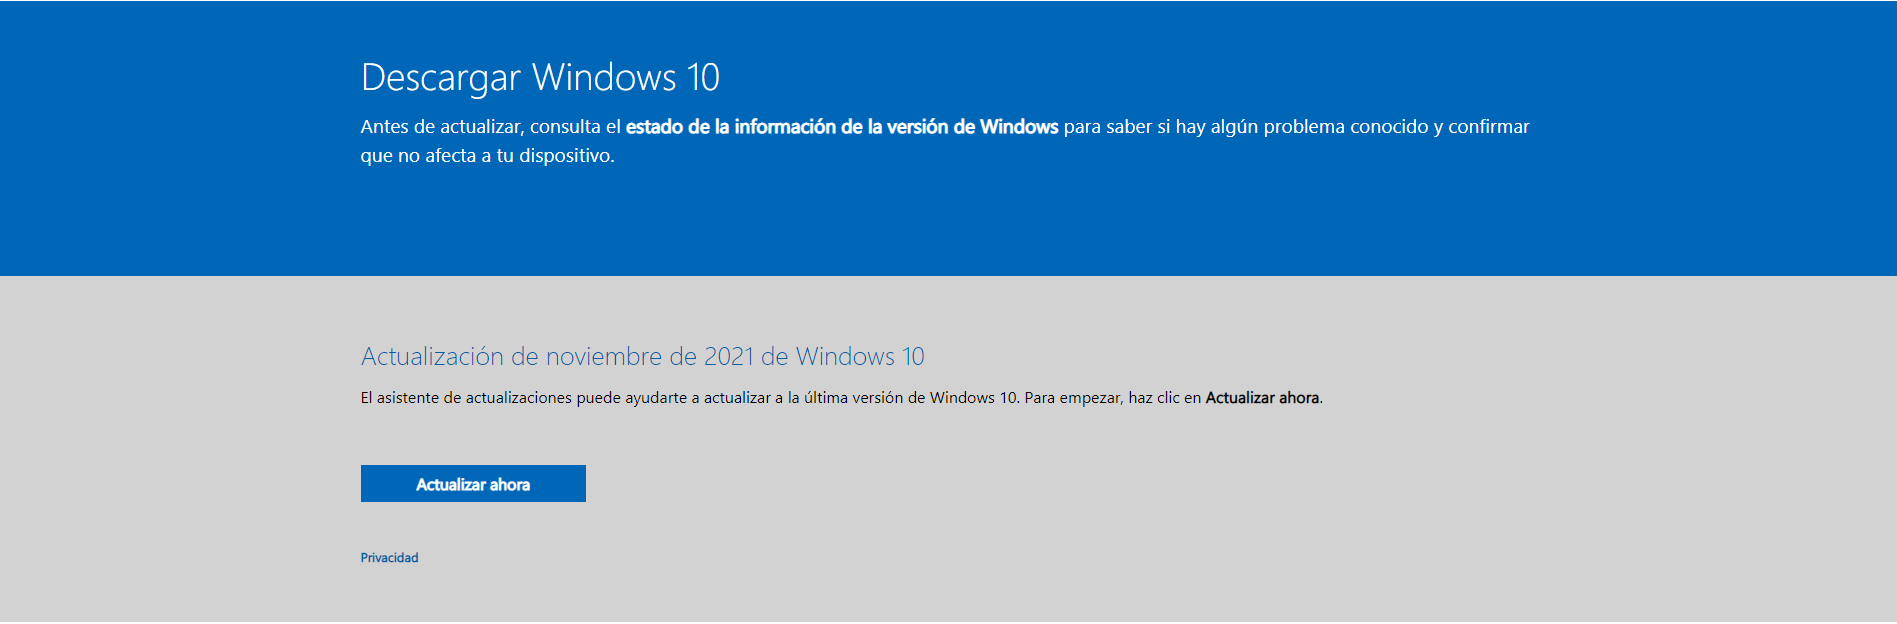 Descargar e instalar Windows 10 21H2